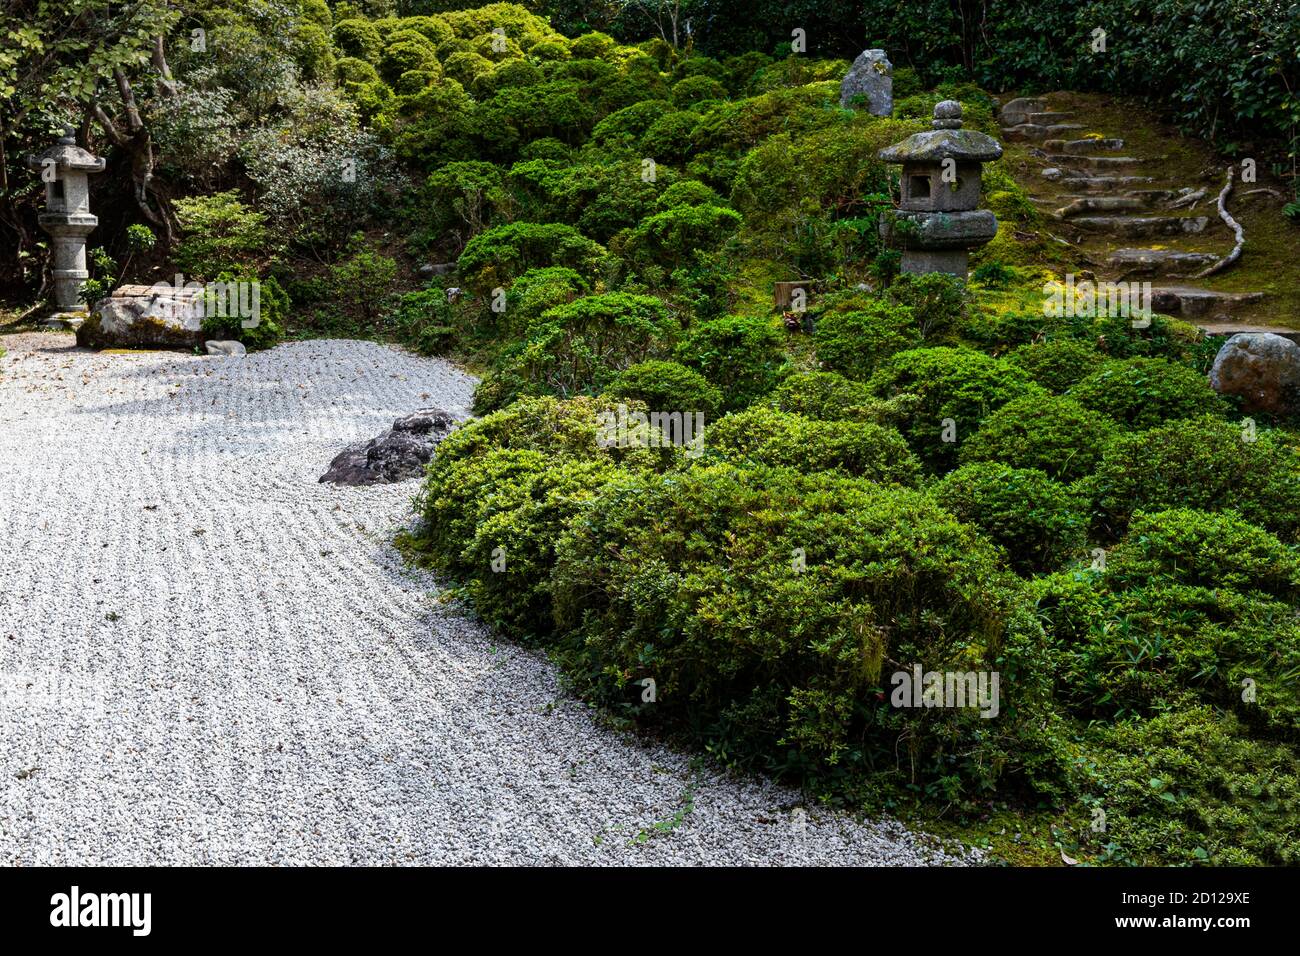 Der Konpuku-ji Garten besteht aus zwei Teilen, dem unteren Tempel und dem Basho-an höher den Hügel hinauf. Der Zen-Garten des Tempels ist ein klassischer Steingarten mit m Stockfoto